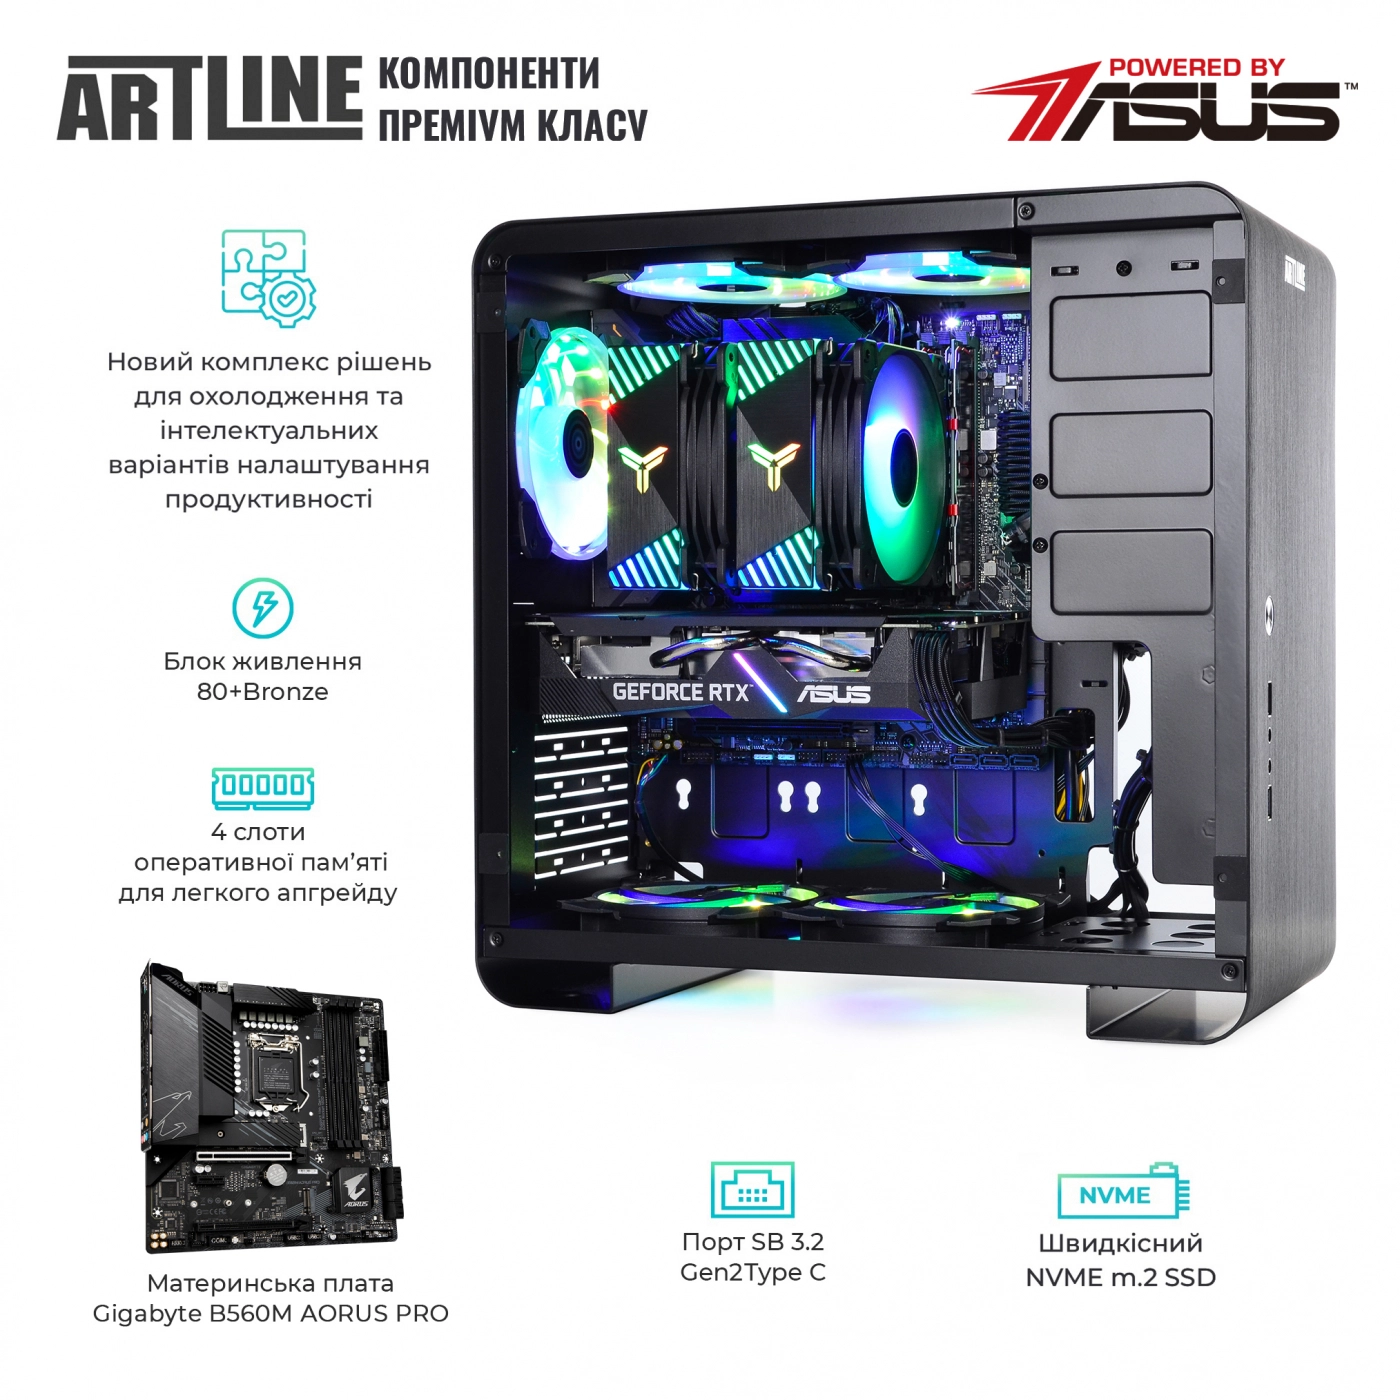 Купить Компьютер ARTLINE Gaming X75v32 - фото 3